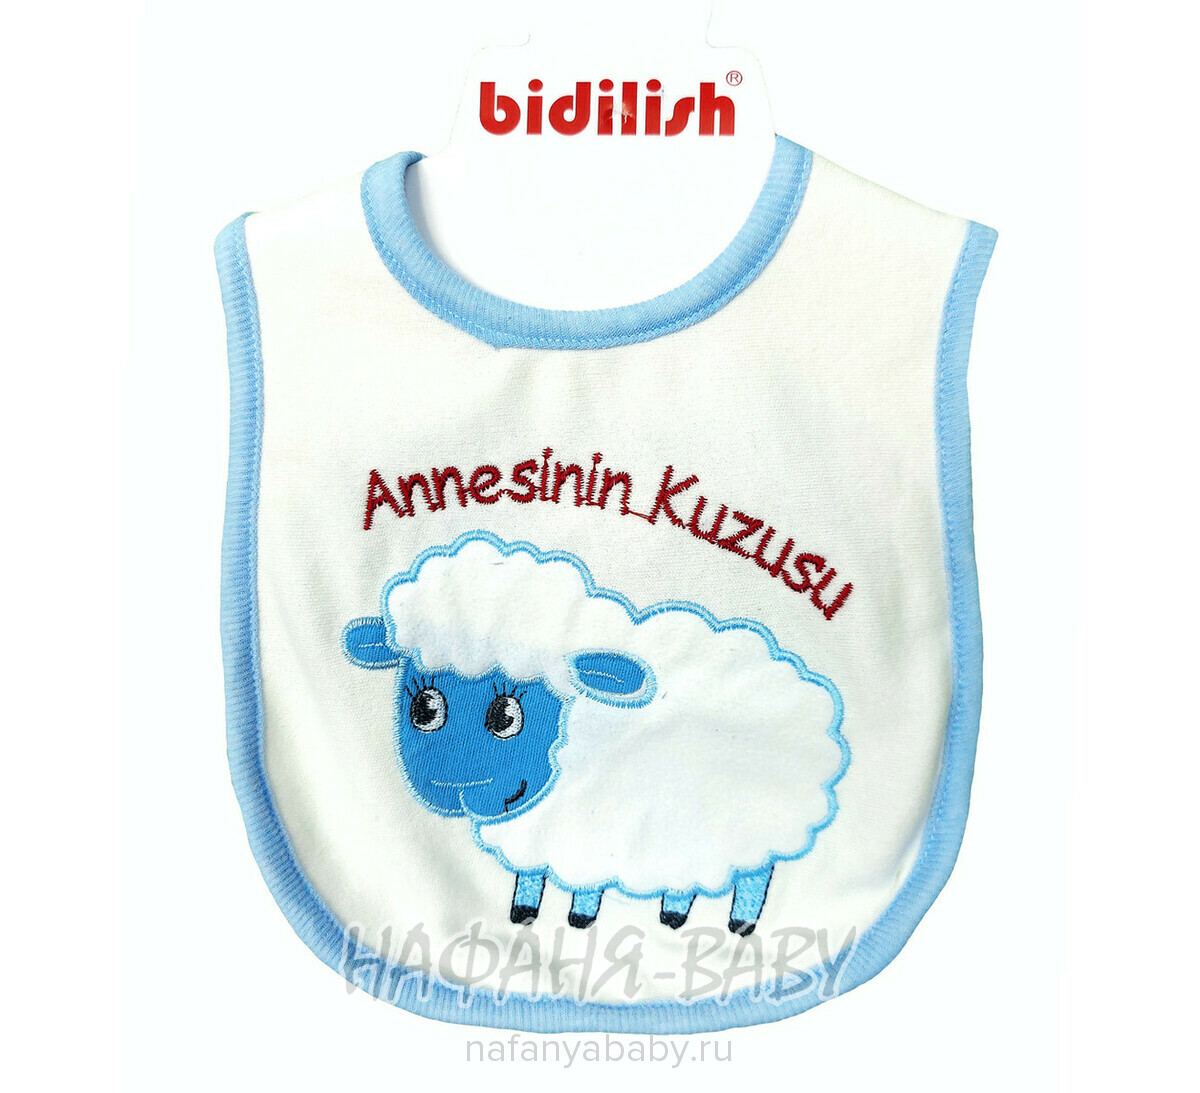 Нагрудник для новорожденных BIDILISH арт: 9067, 0-12 мес, оптом Турция